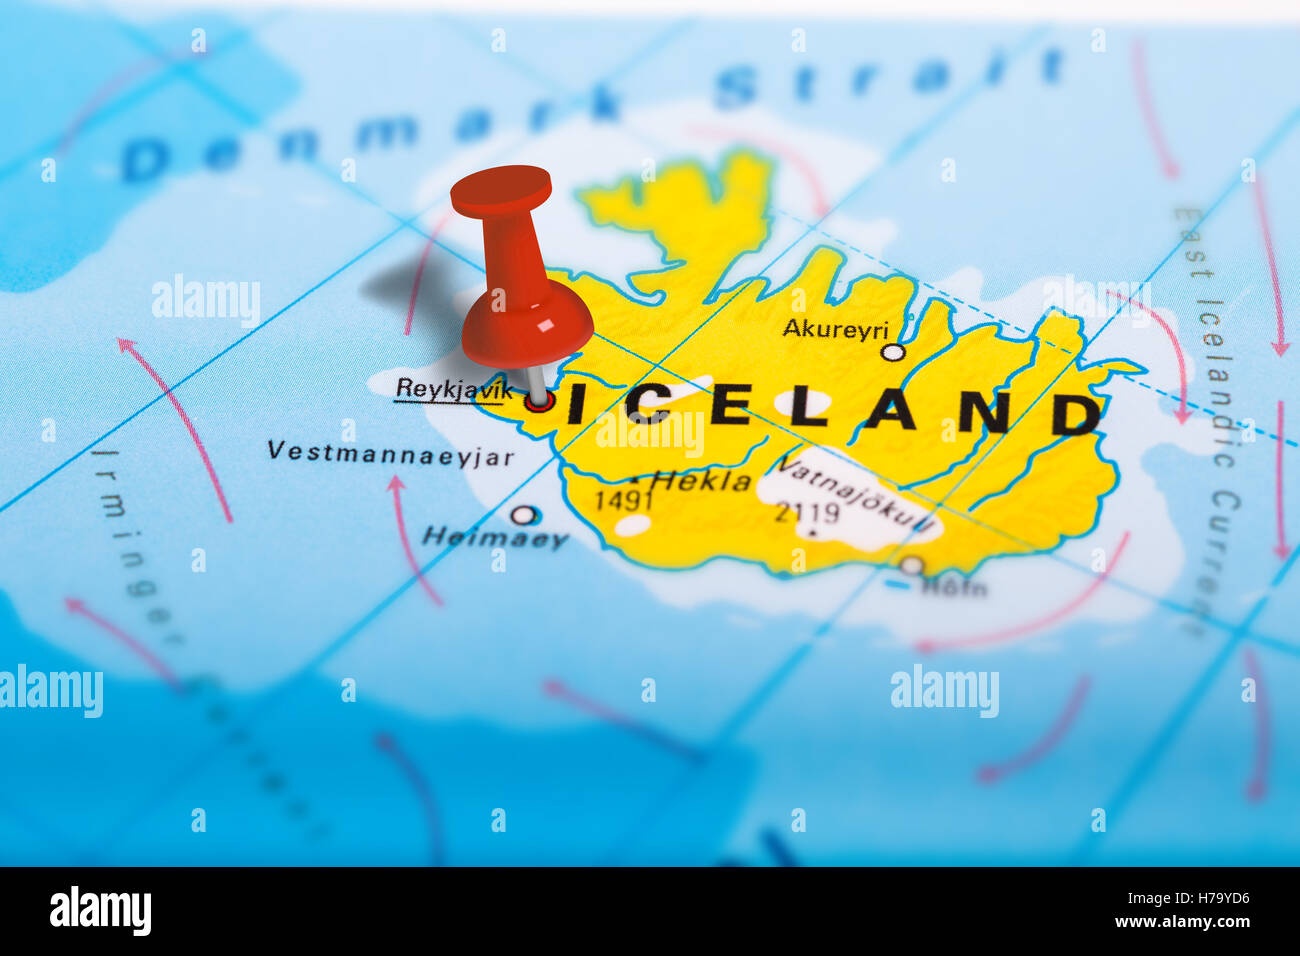 Reykjavik Iceland map Stock Photo